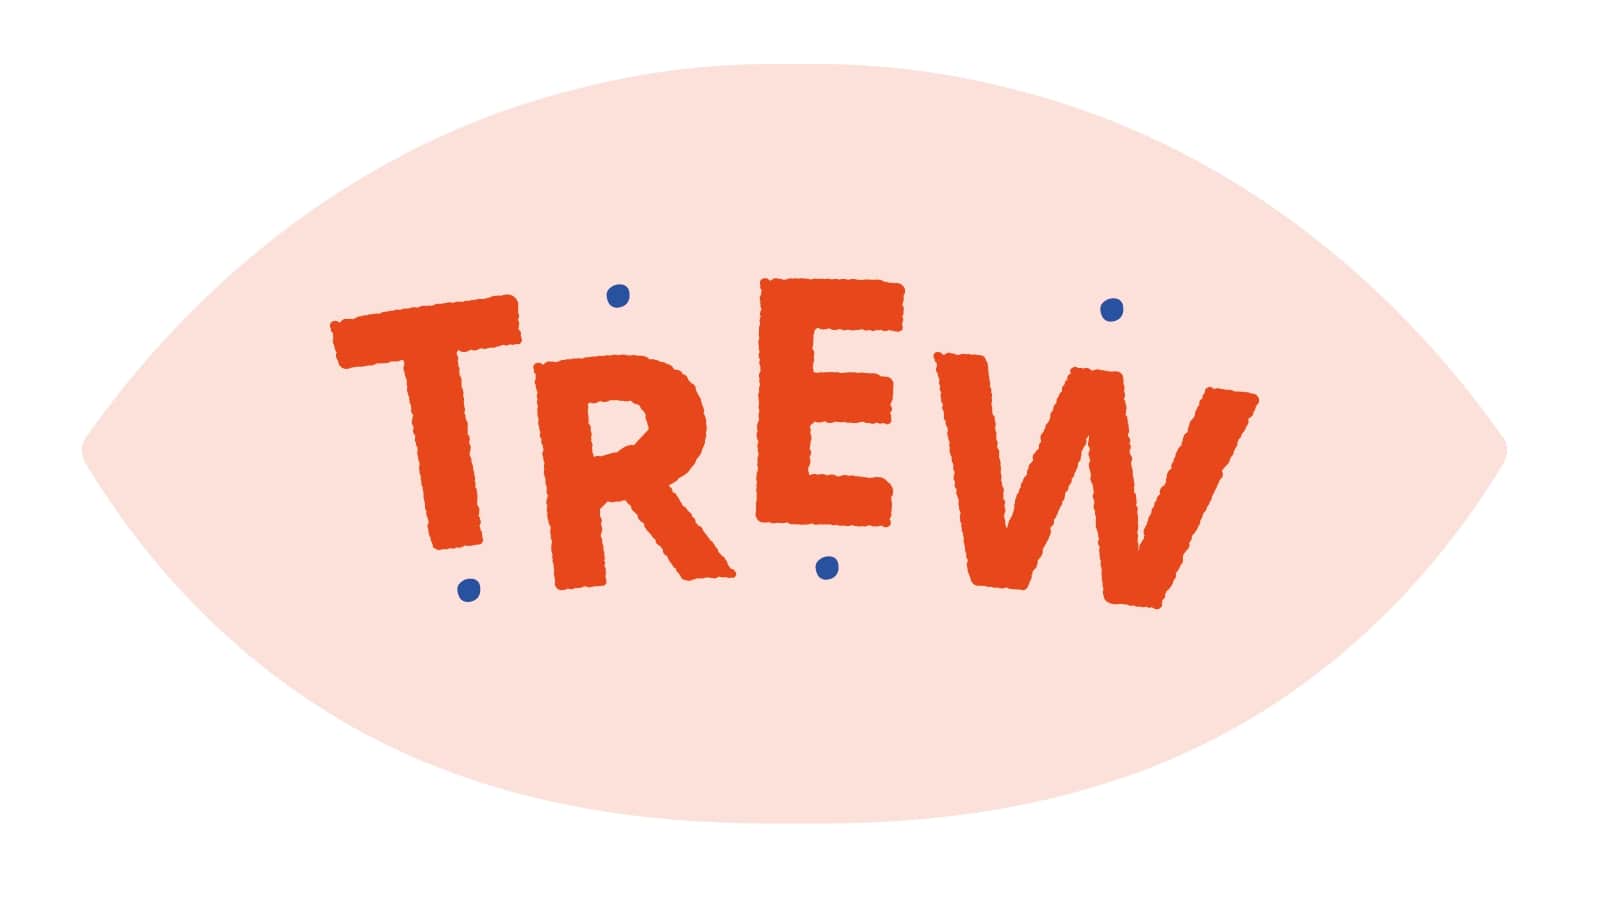 logo trew